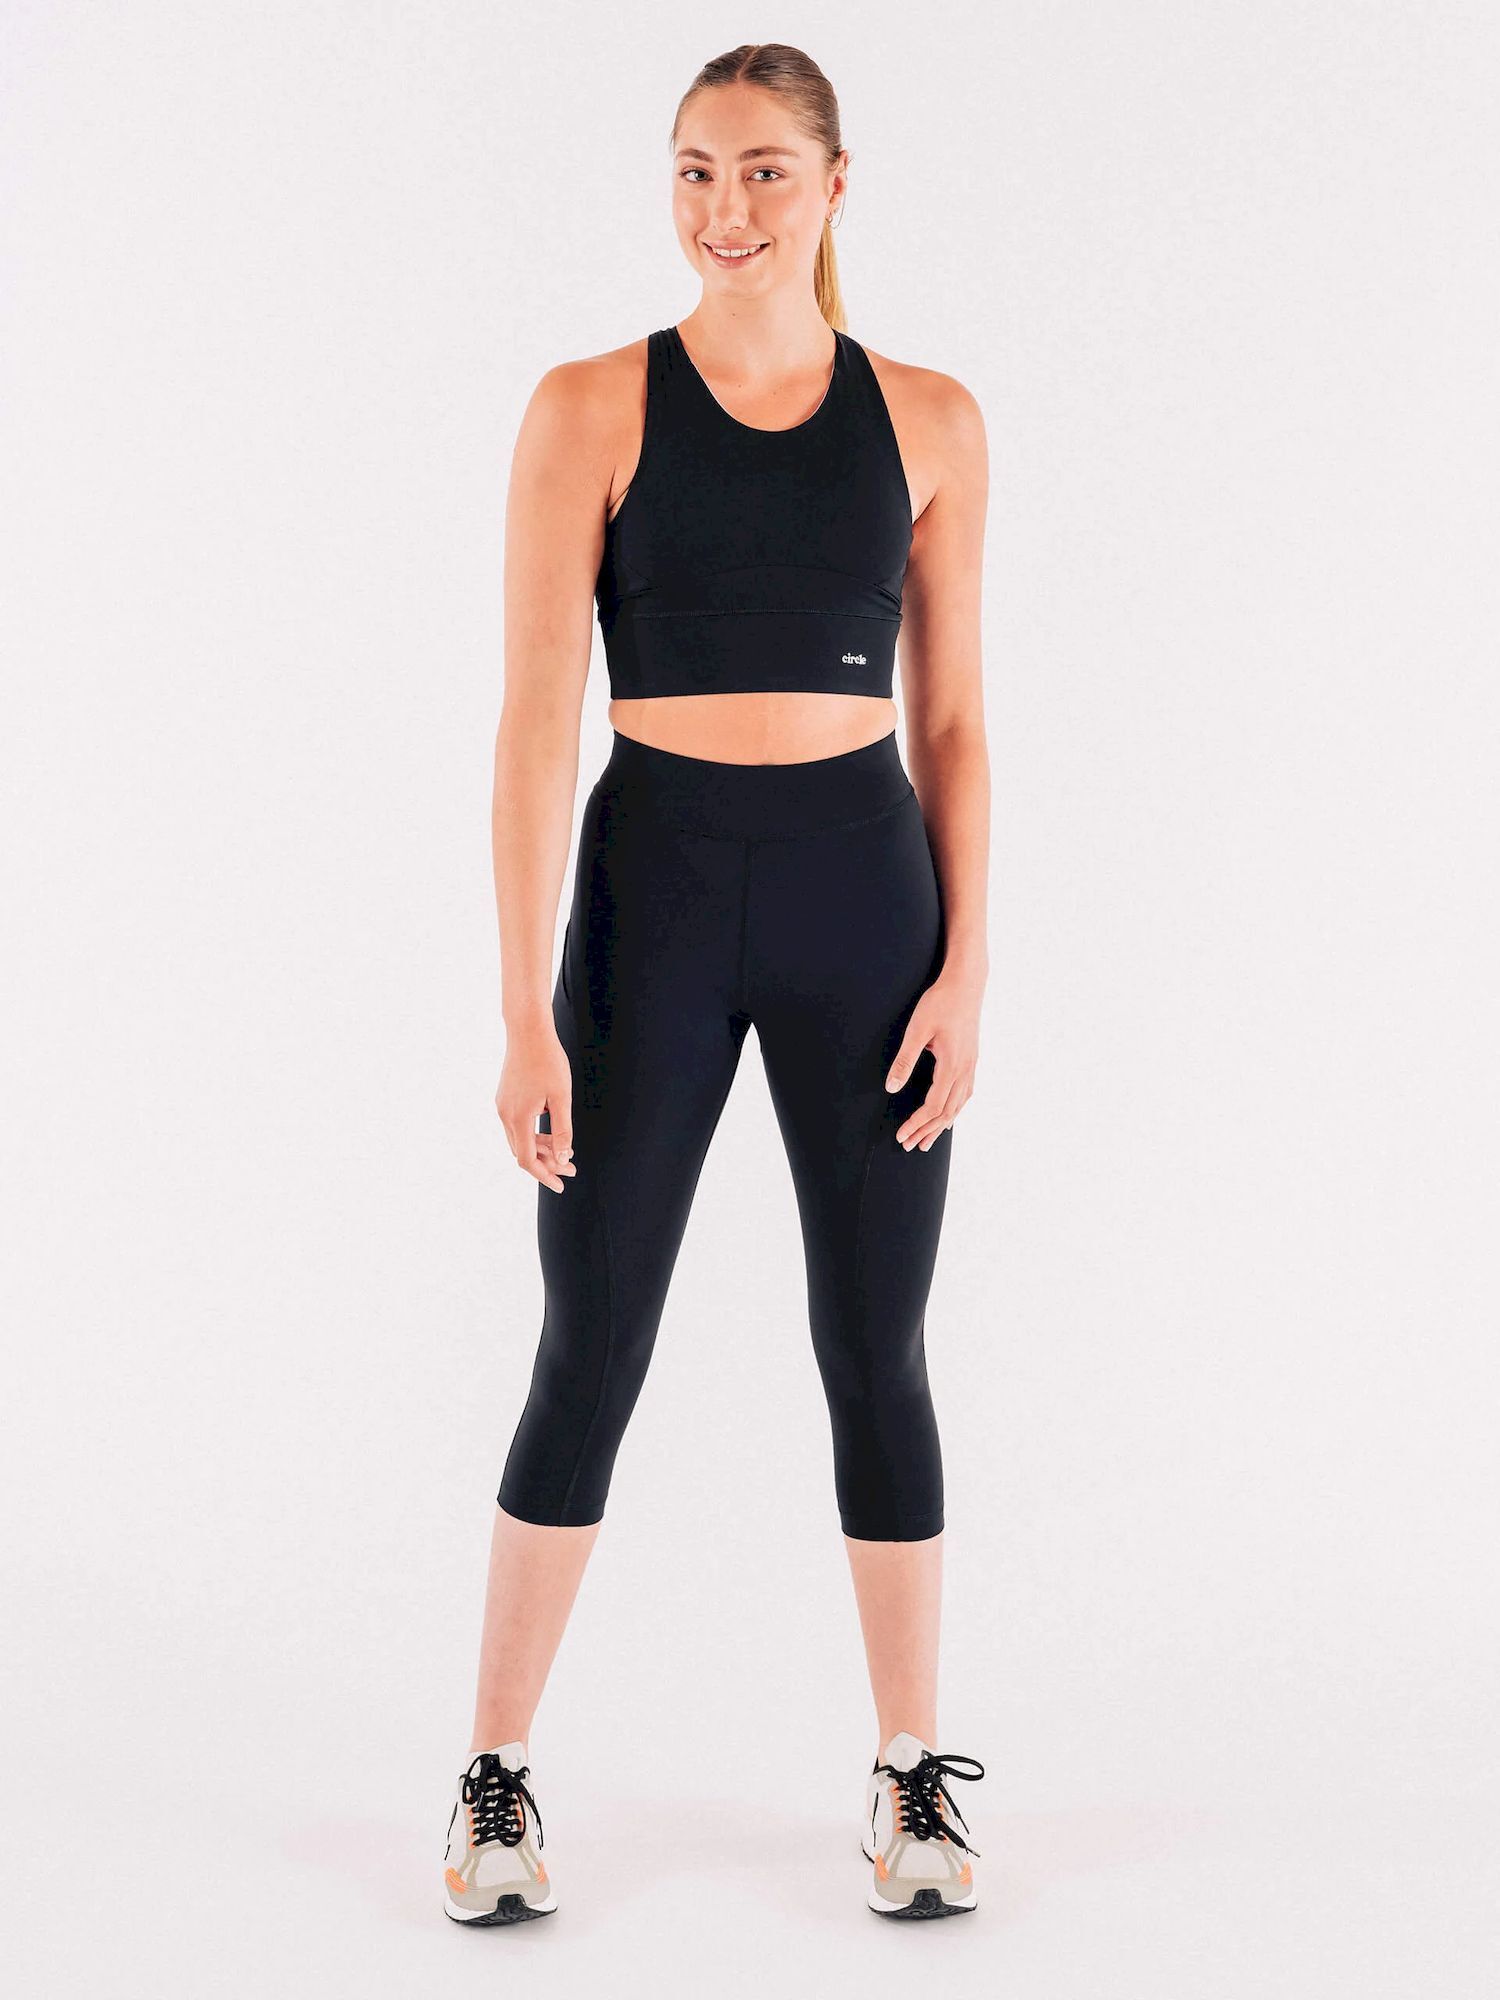 Circle Sportswear Get in Shape 53 - Mallas de running - Mujer